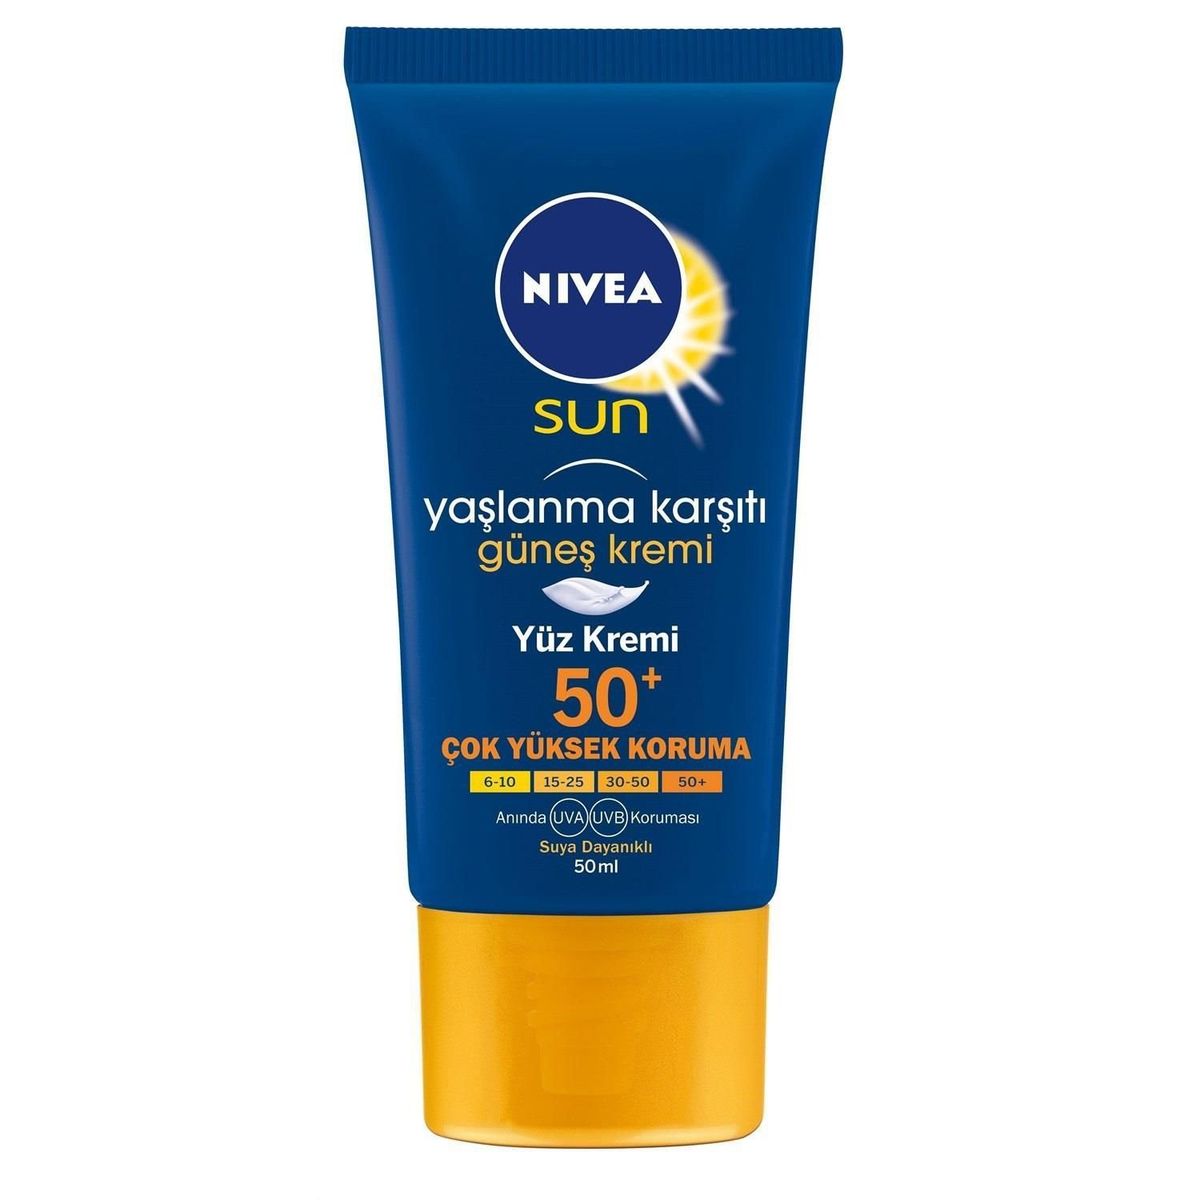 Солнцезащитный для лица. Солнцезащитный крем Nivea Sun. Nivea солнцезащитный крем 50. Nivea Sun 50 для лица крем. Нивея солнцезащитный крем для лица SPF 50.